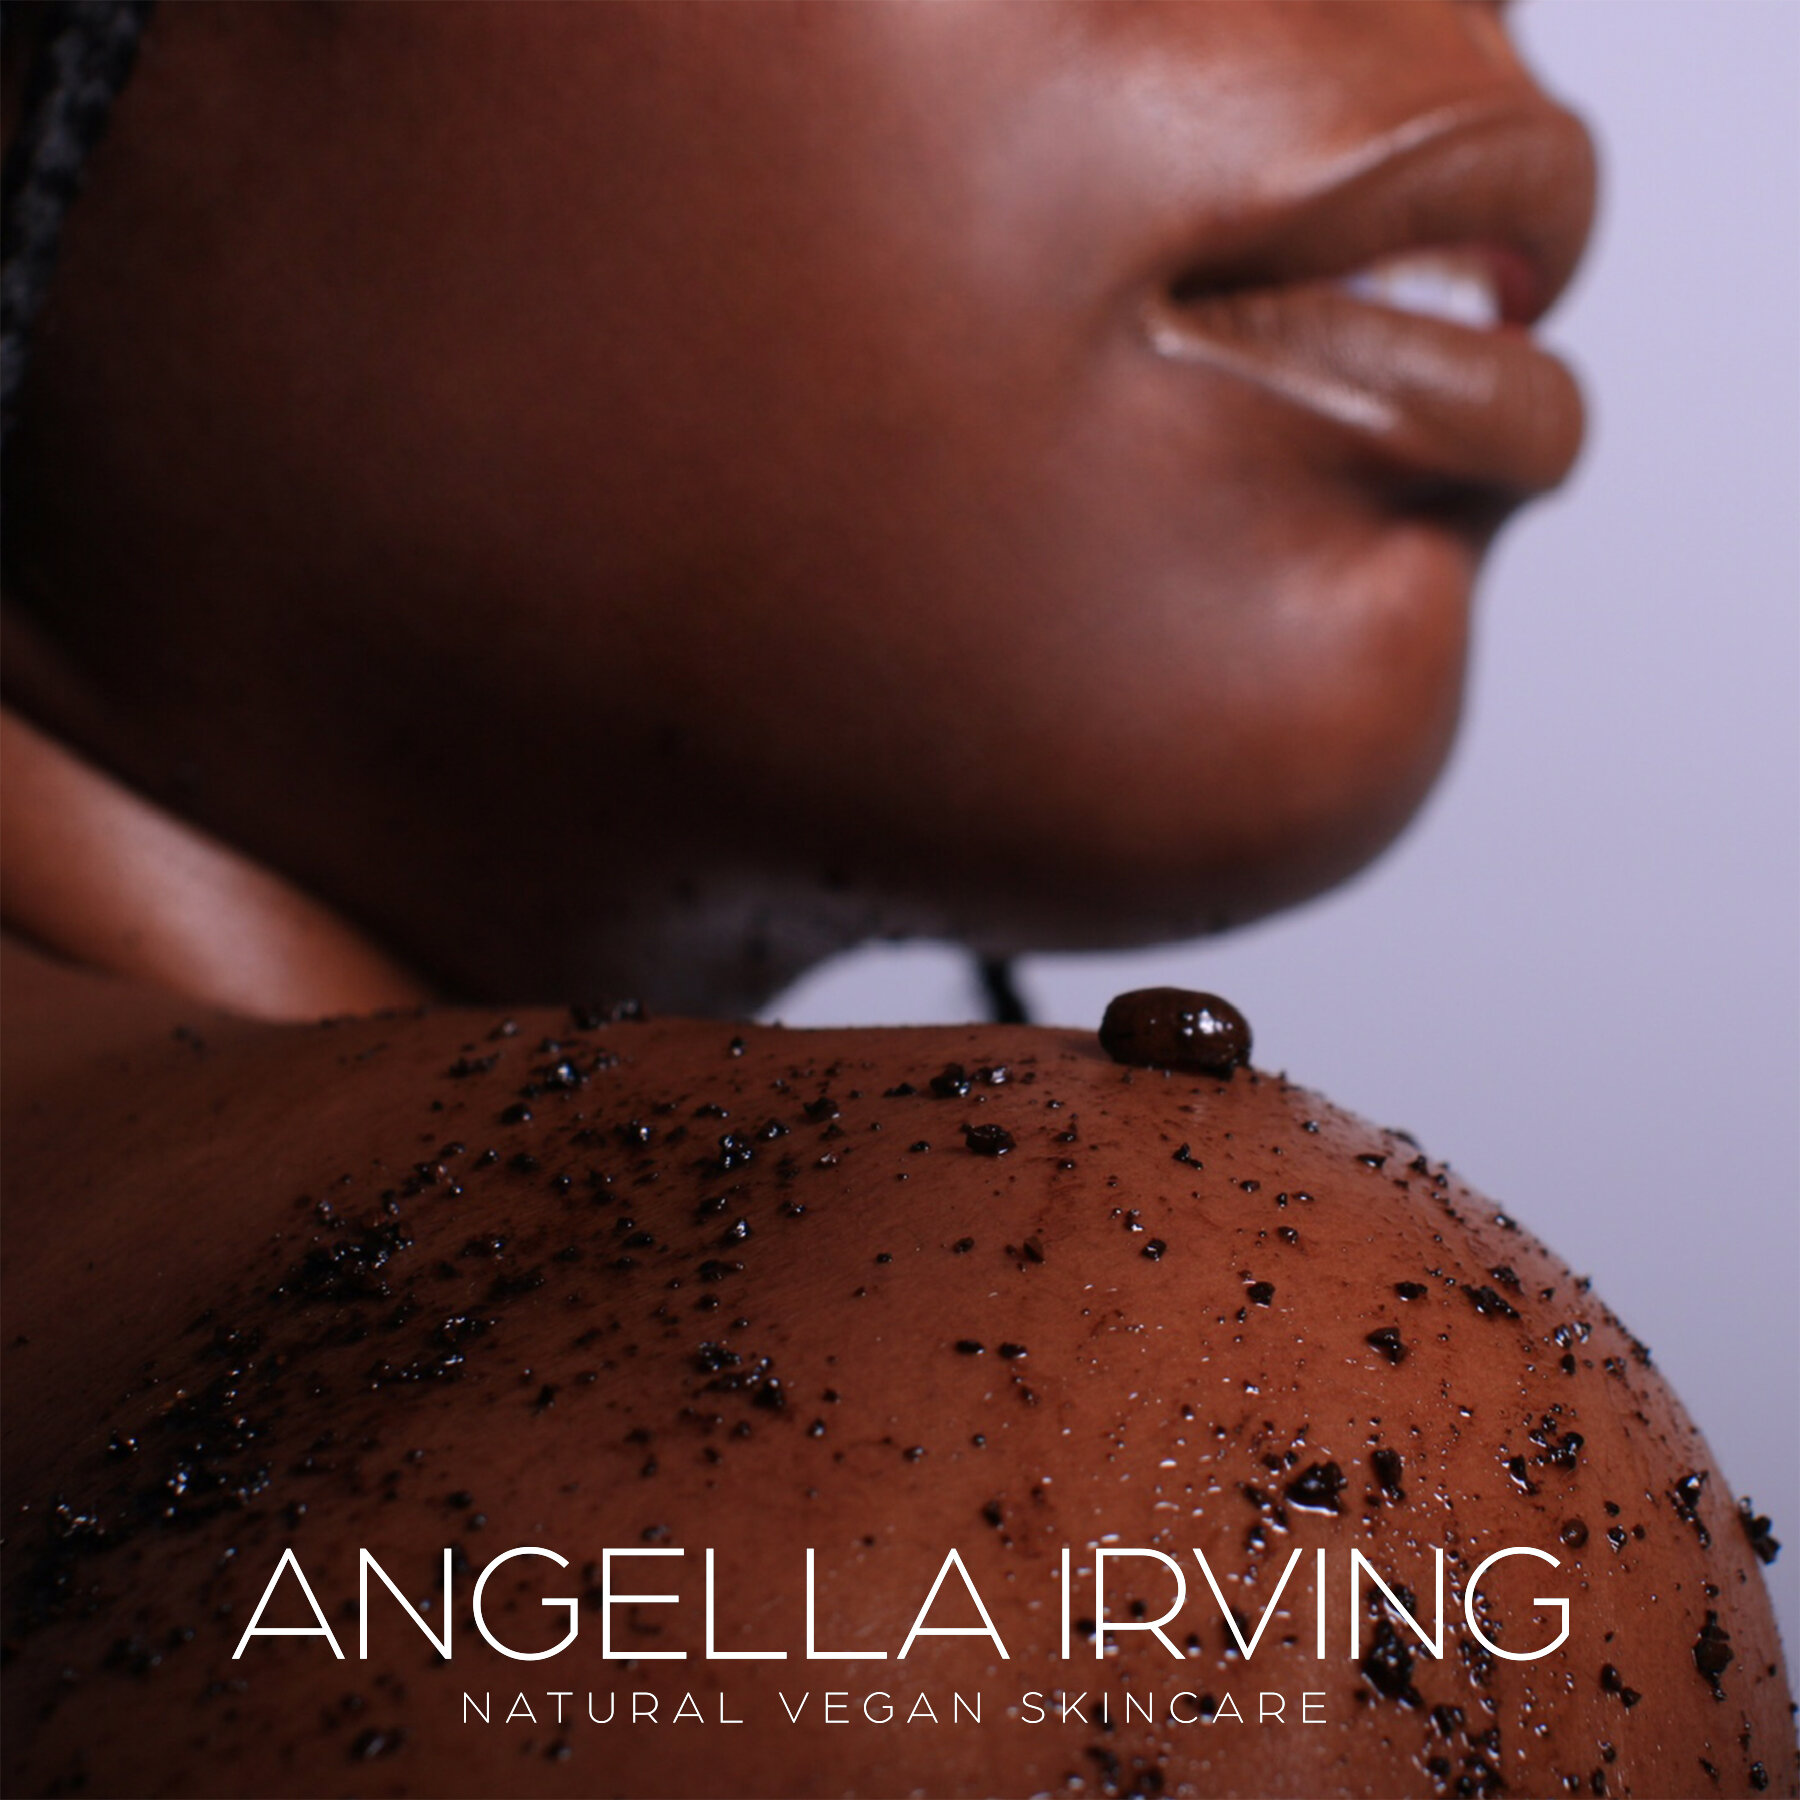 Angella Irving